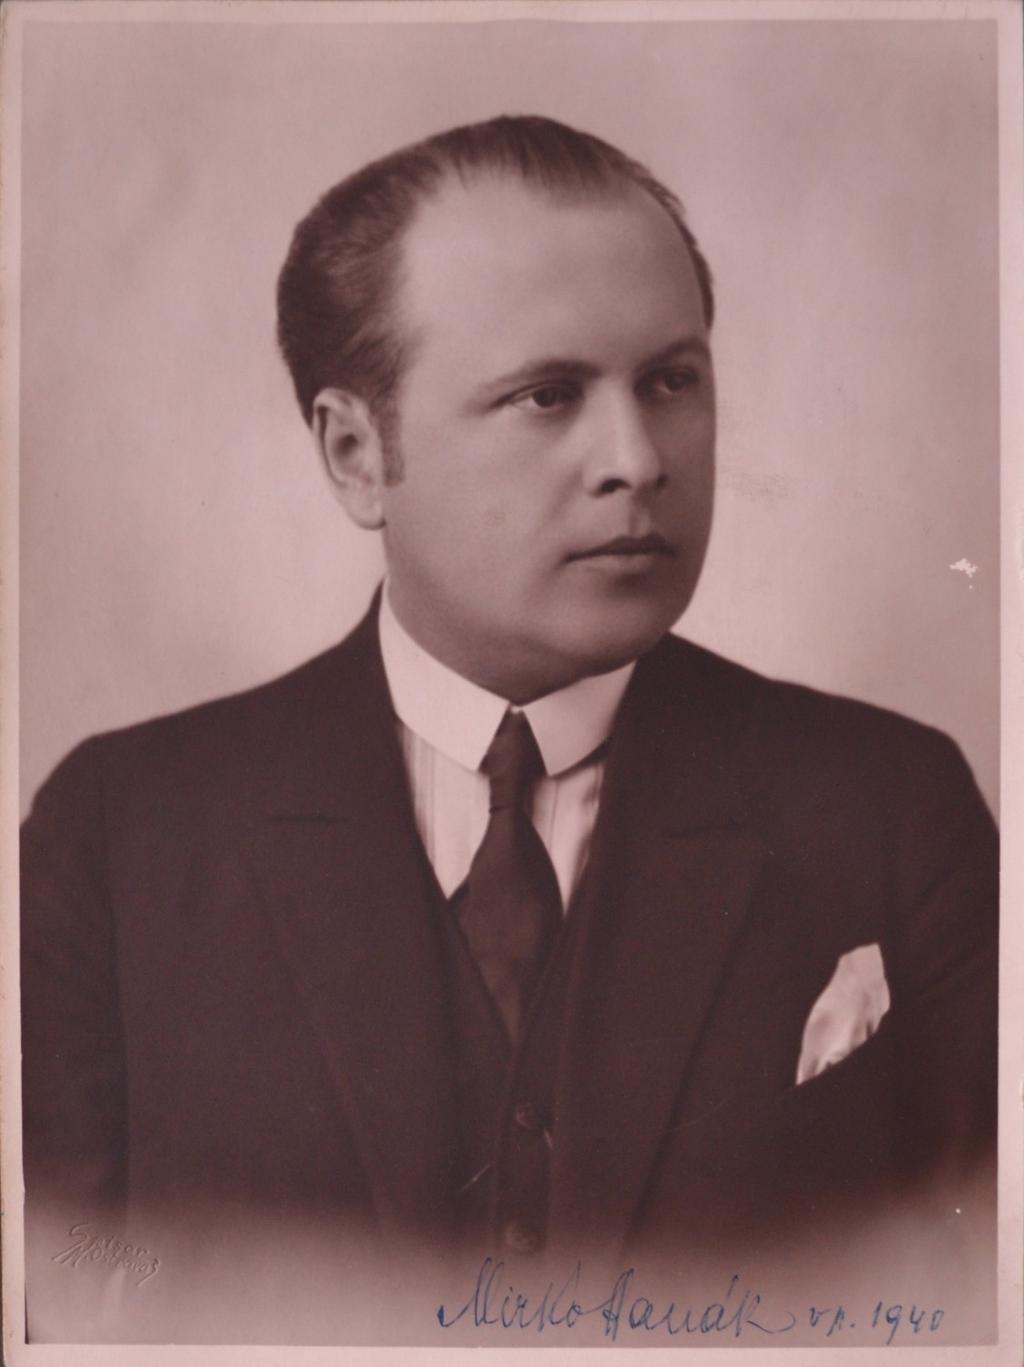 Obrázek D Mirko Hanák na civilní fotografii v roce 1940.